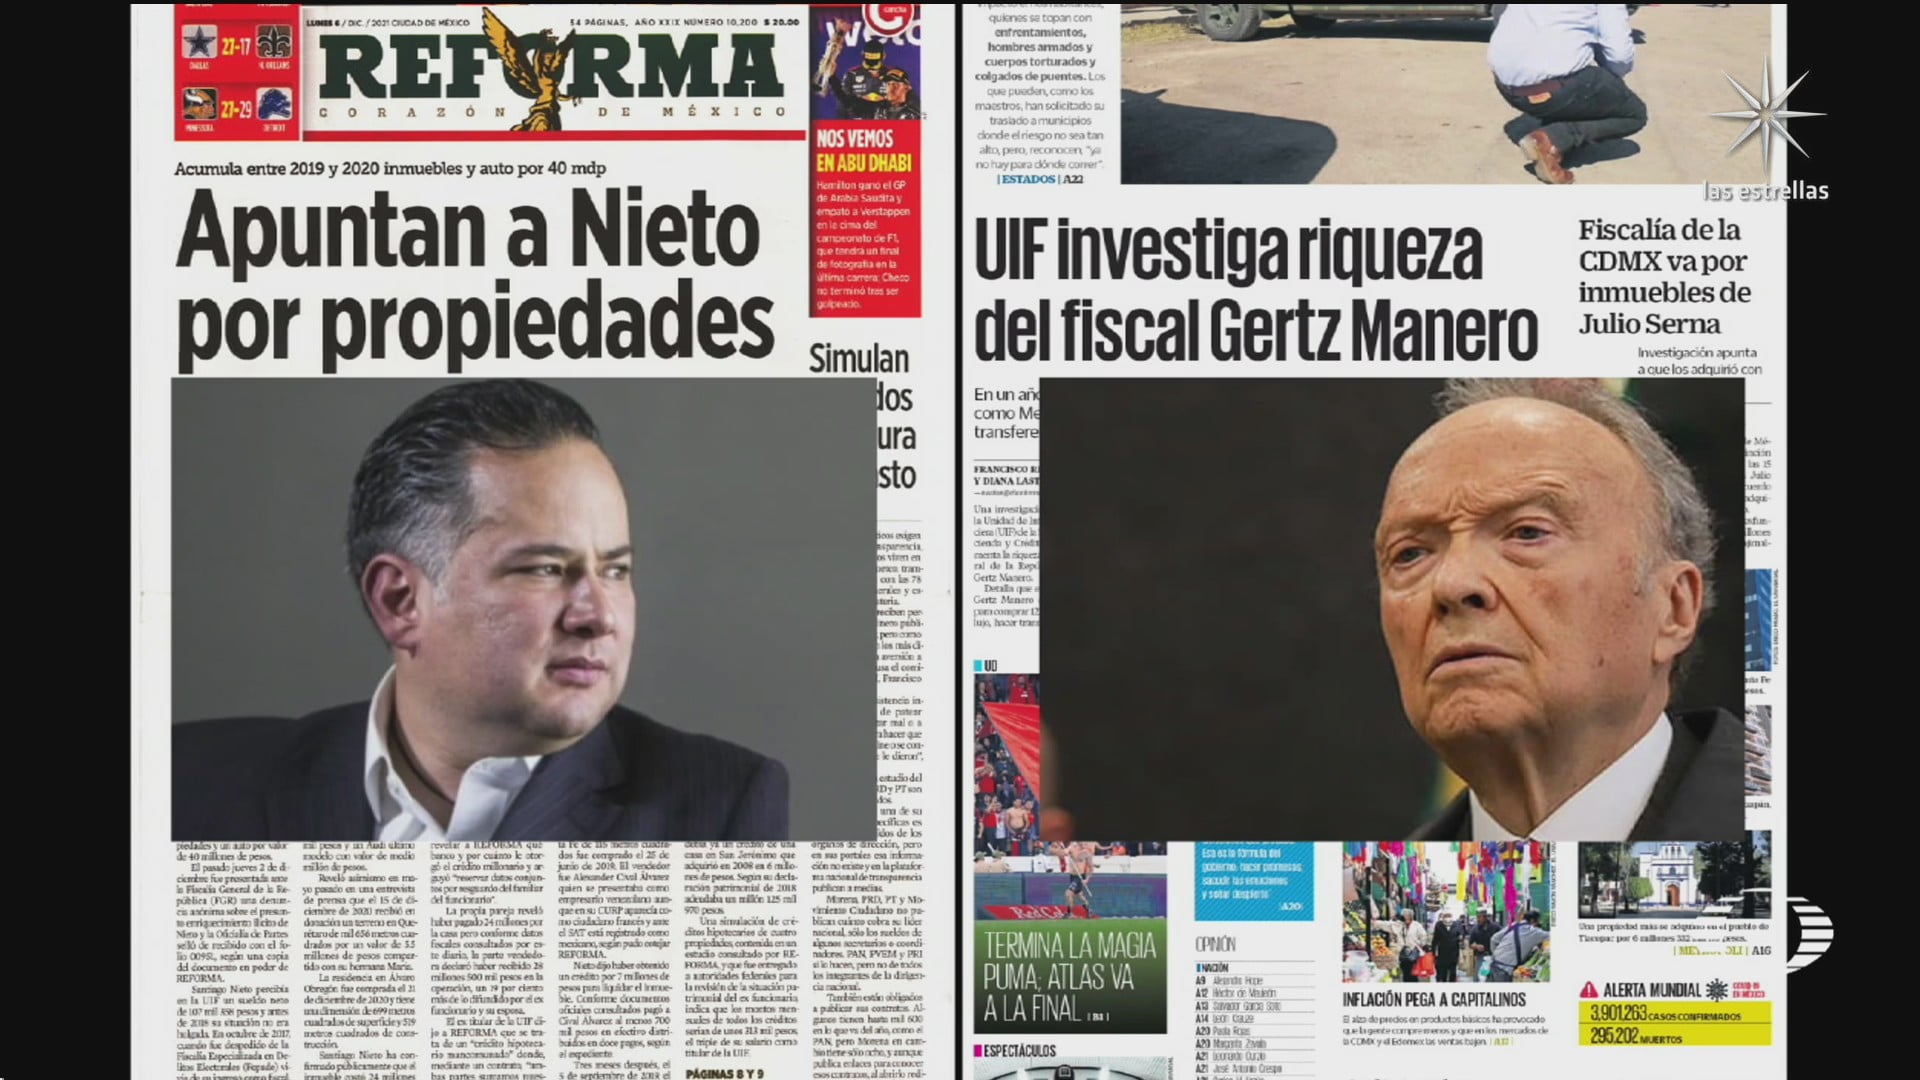 polemica entre diarios por informacion sobre santiago nieto y gertz manero